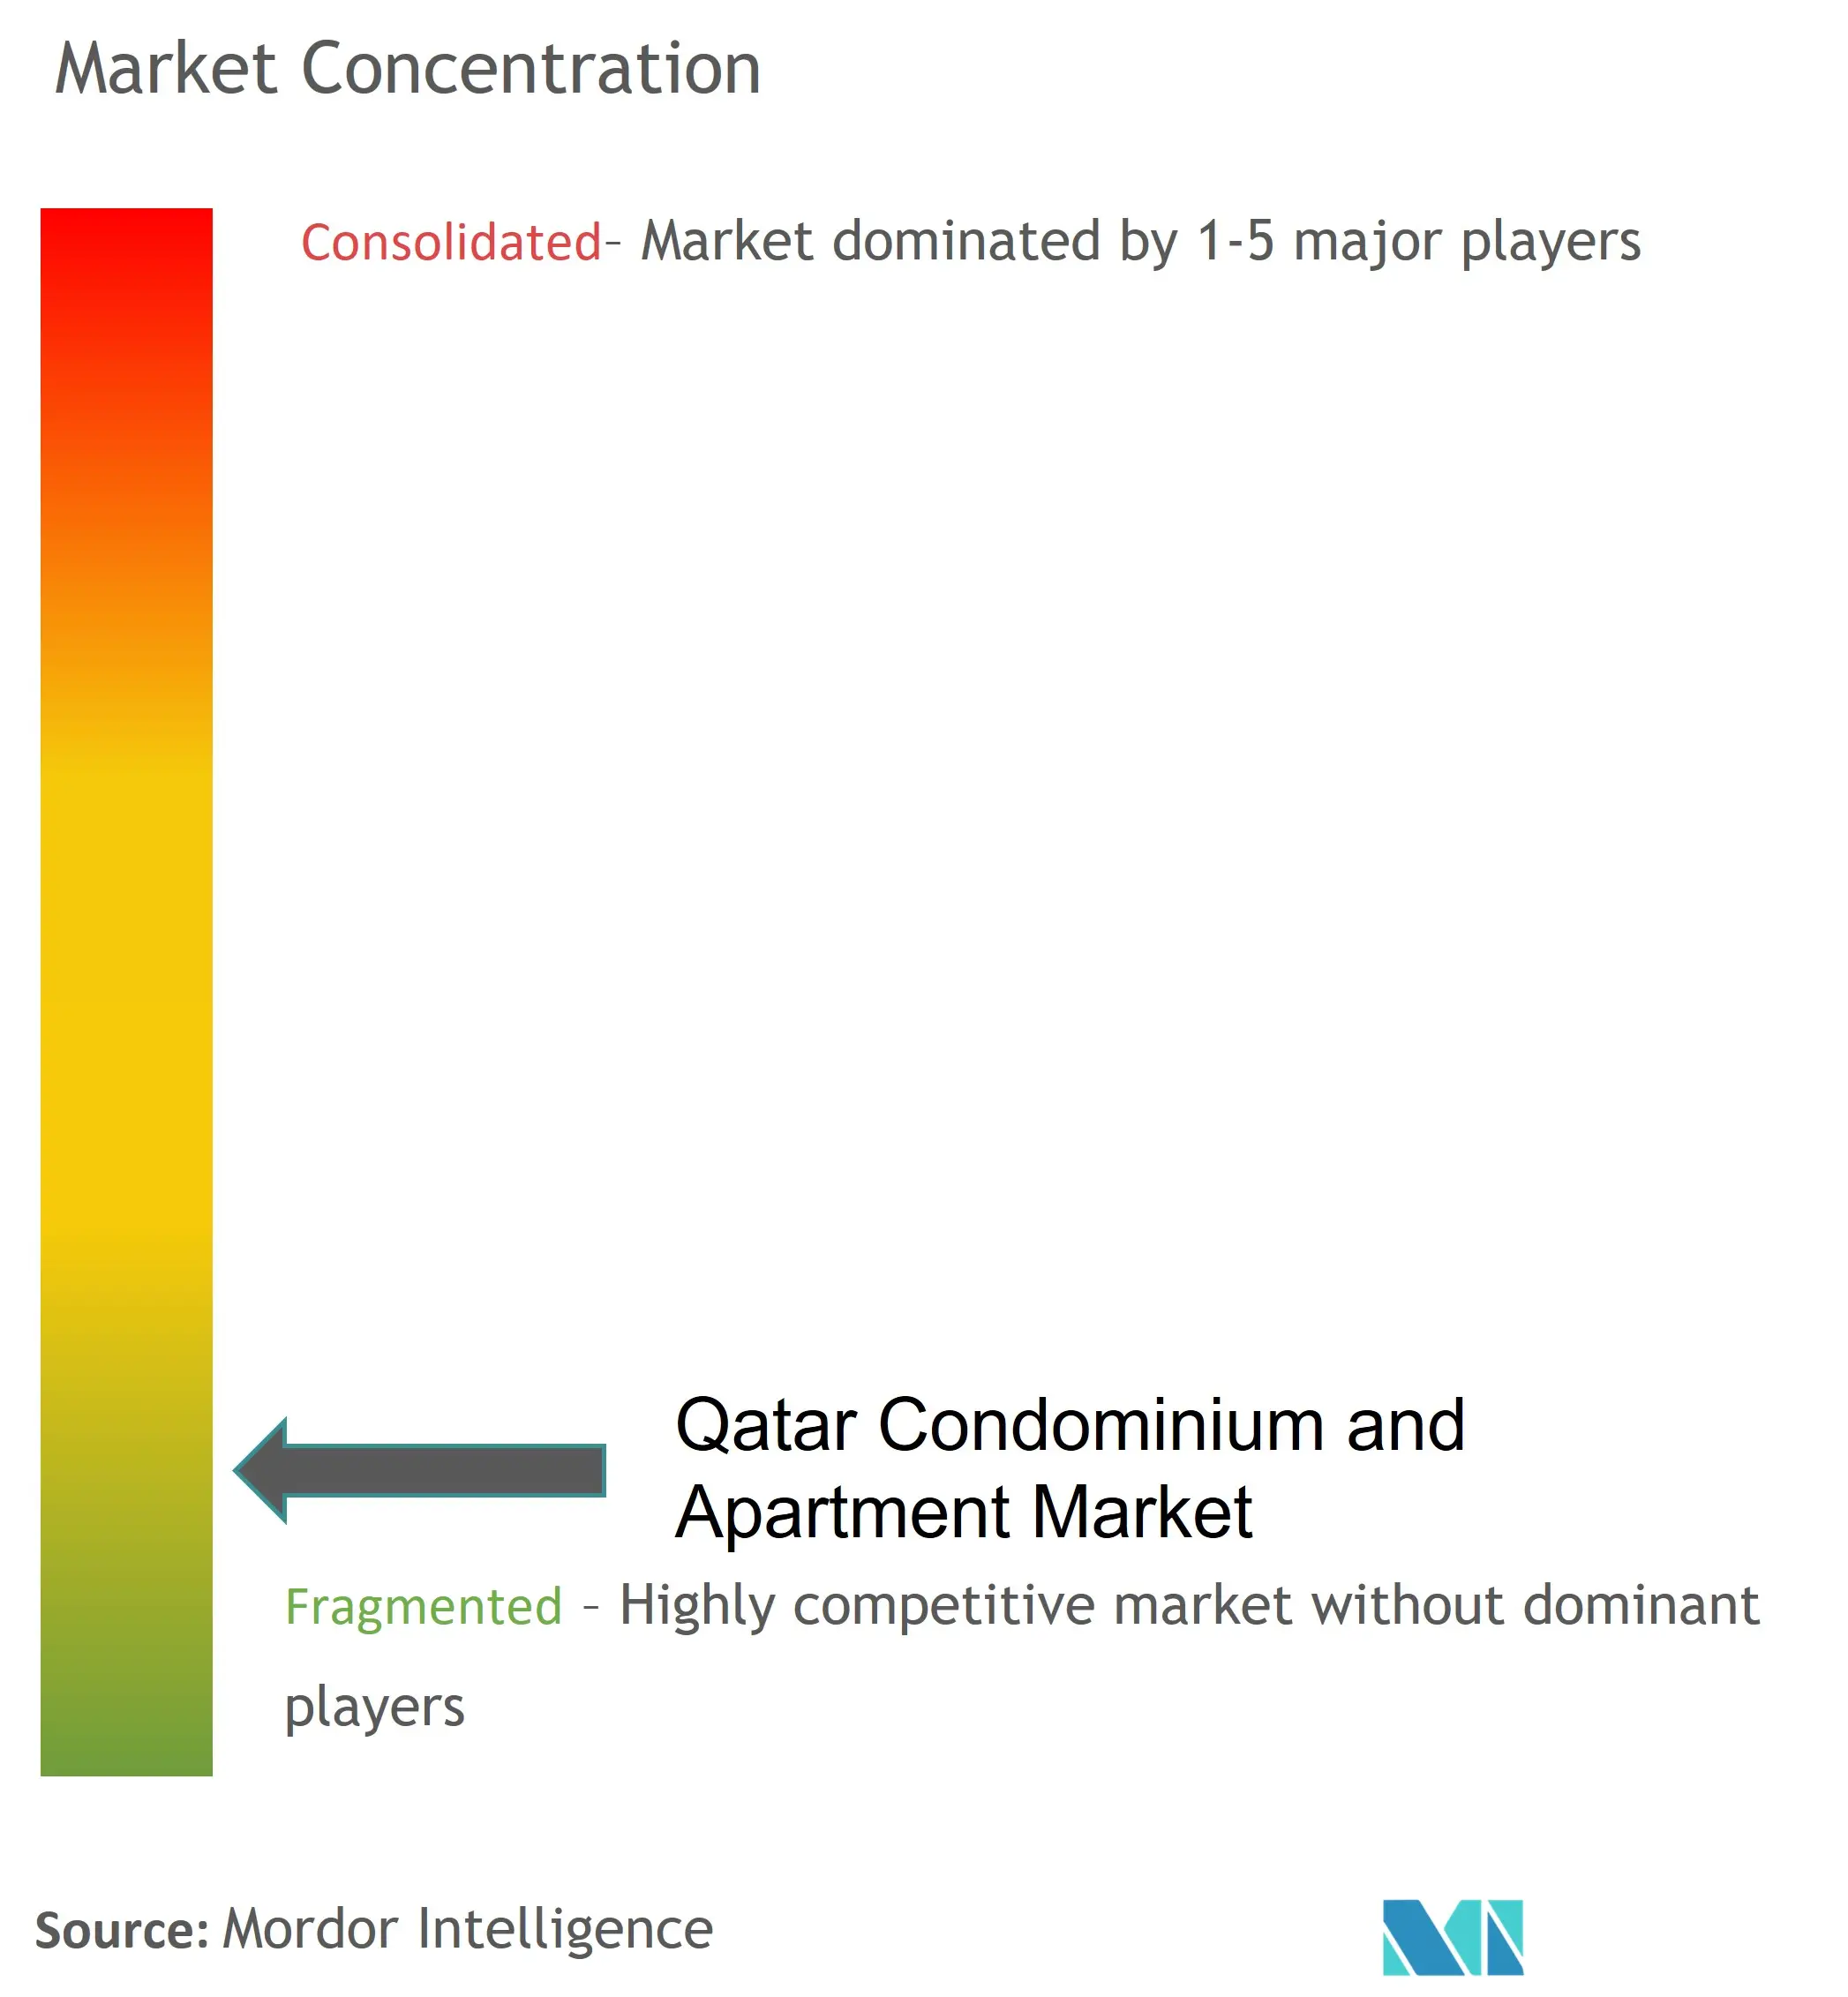 Qatar Condominium and Apartment Market - Competitive Landscape